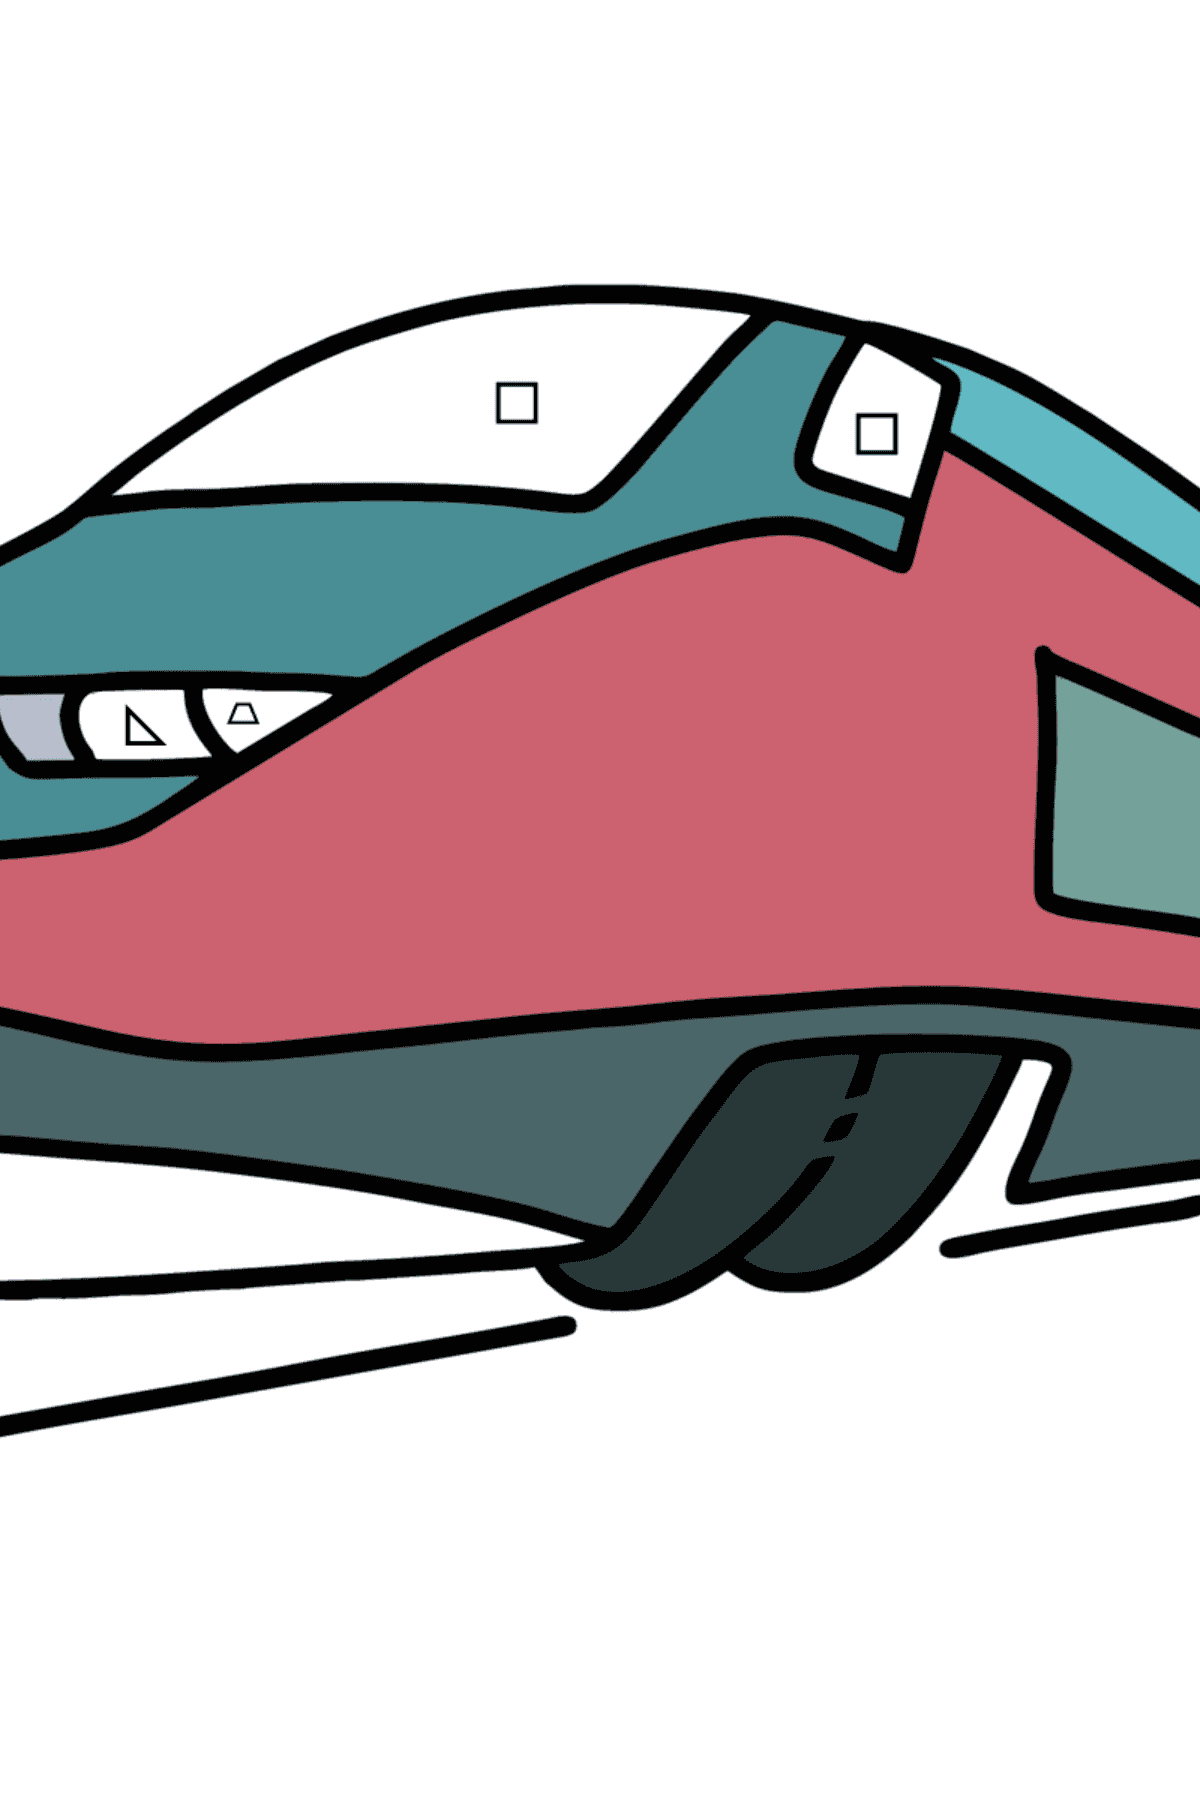 Раскраска поезд для детей - Картинка высокого качества для Детей